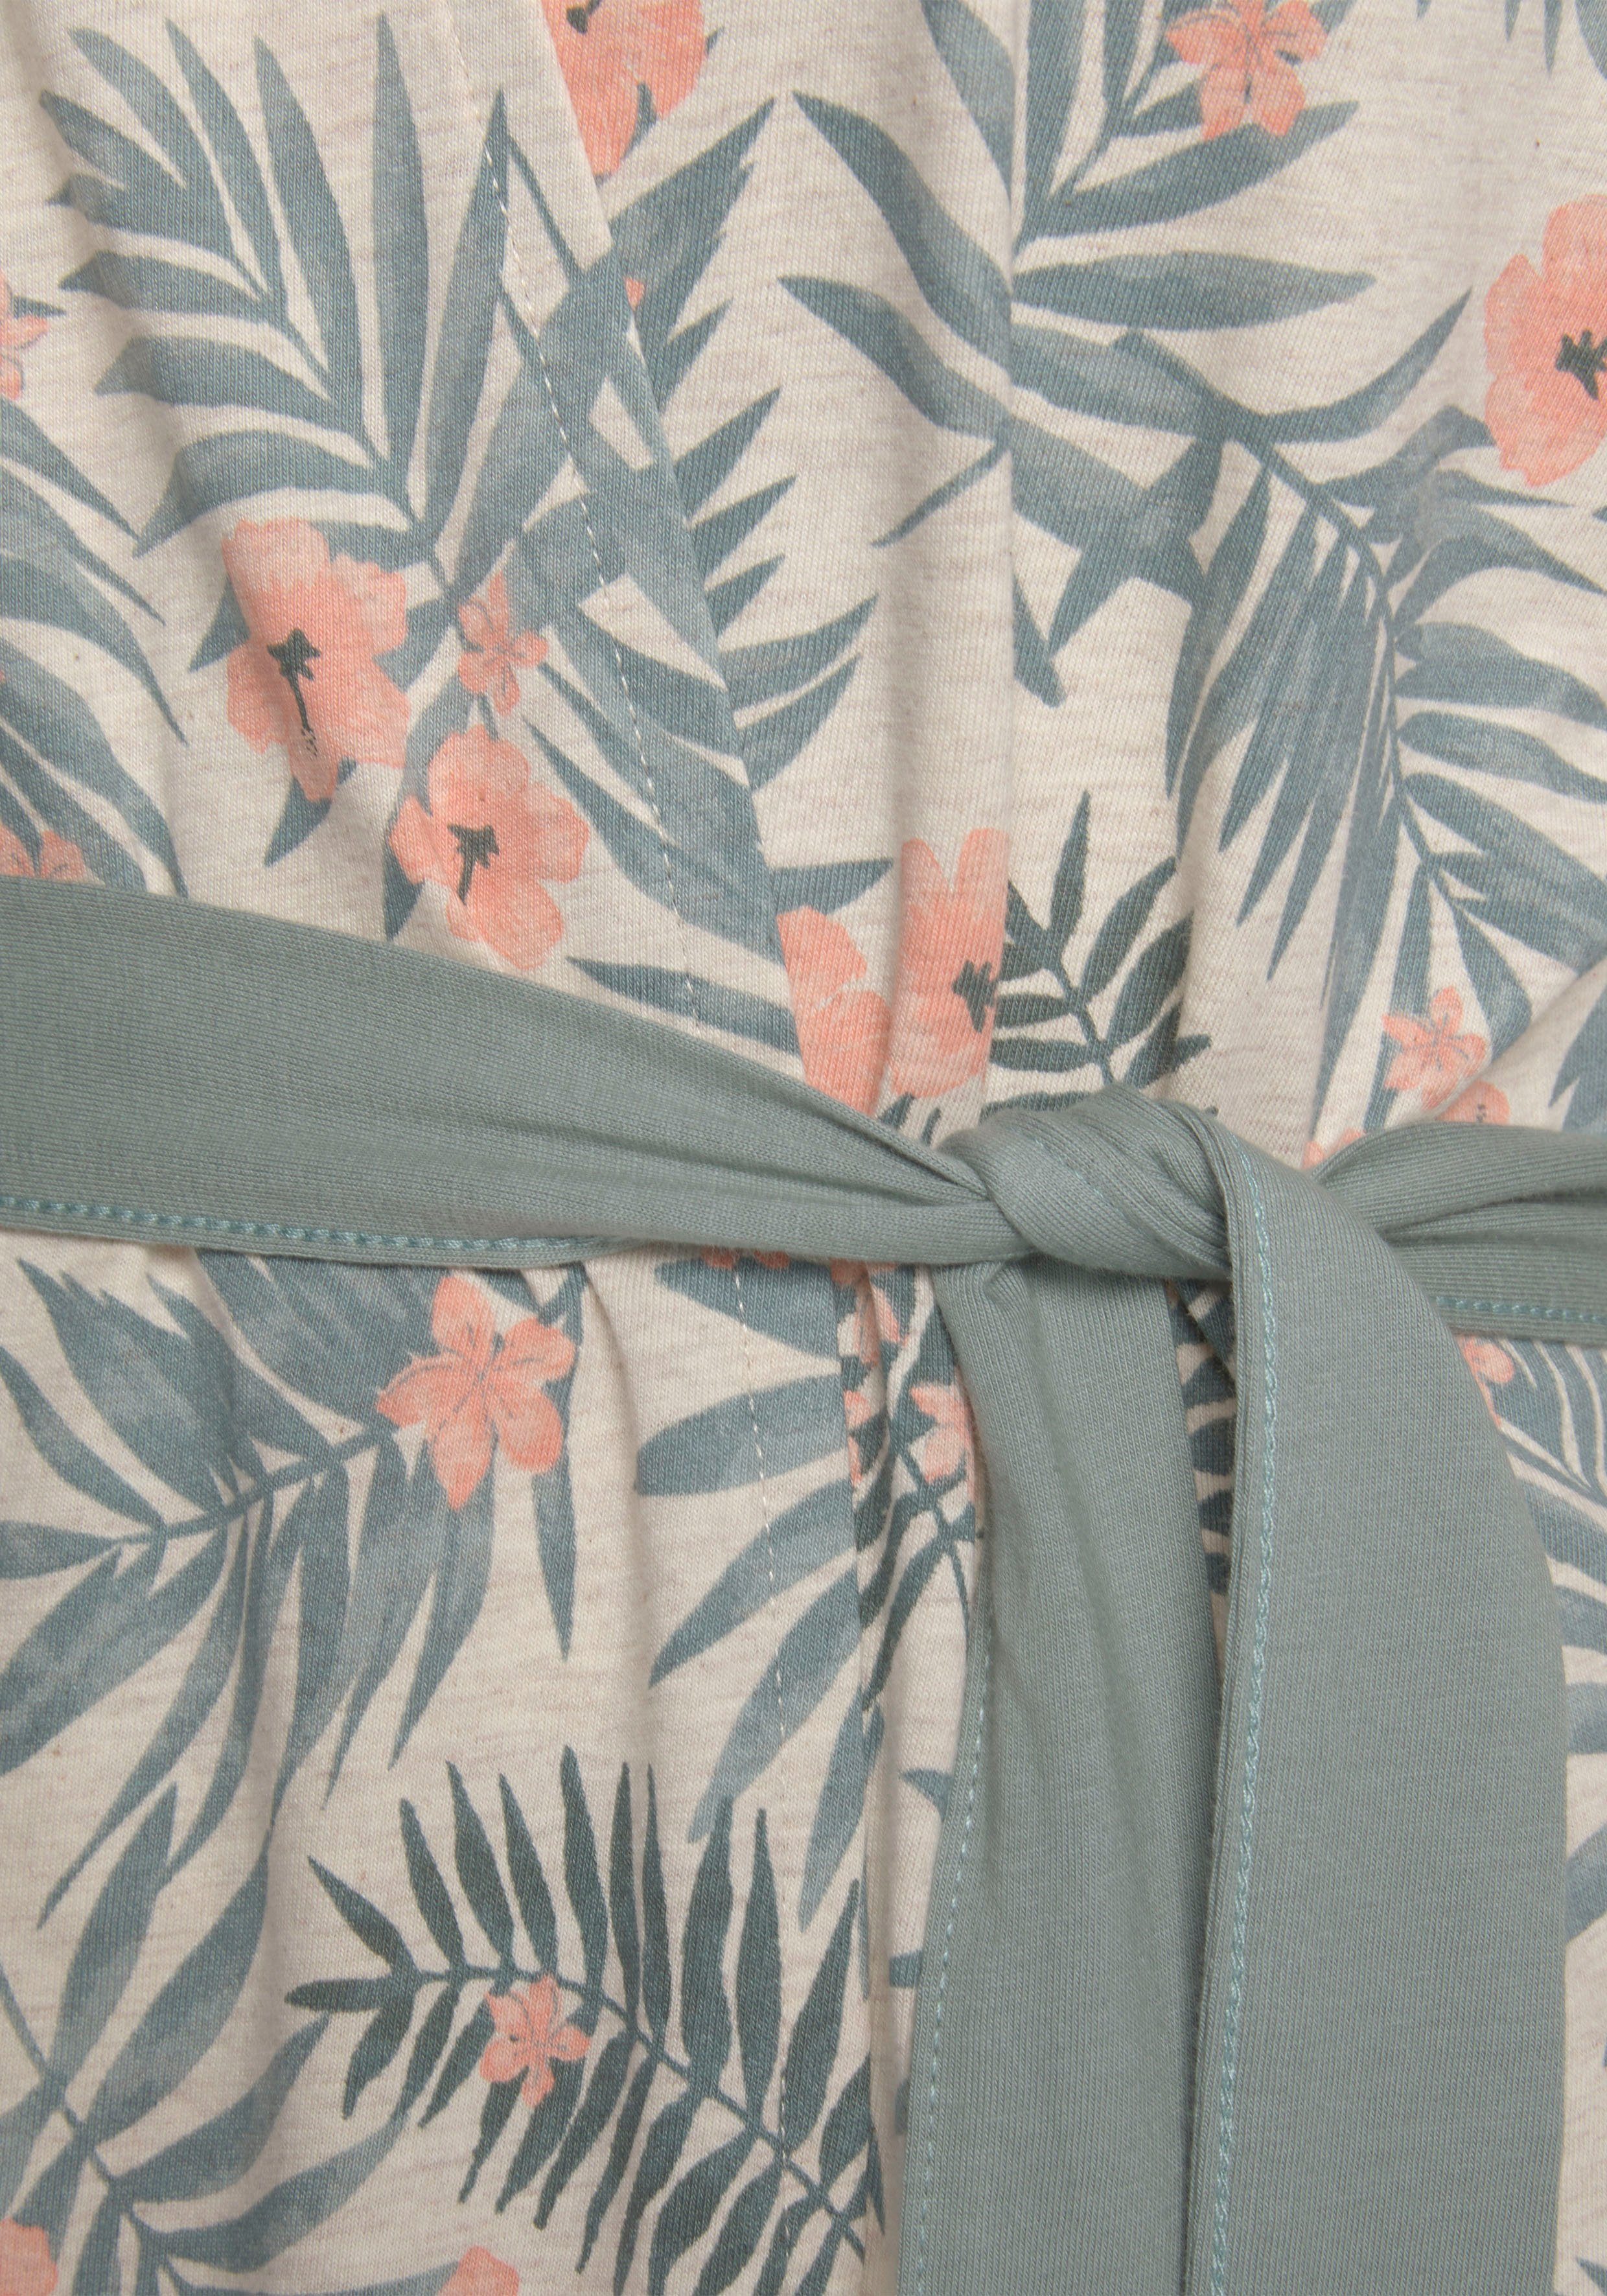 LASCANA Kimono, Kurzform, Baumwolle, sand-grün Allover-Druck und Gürtel, in uni